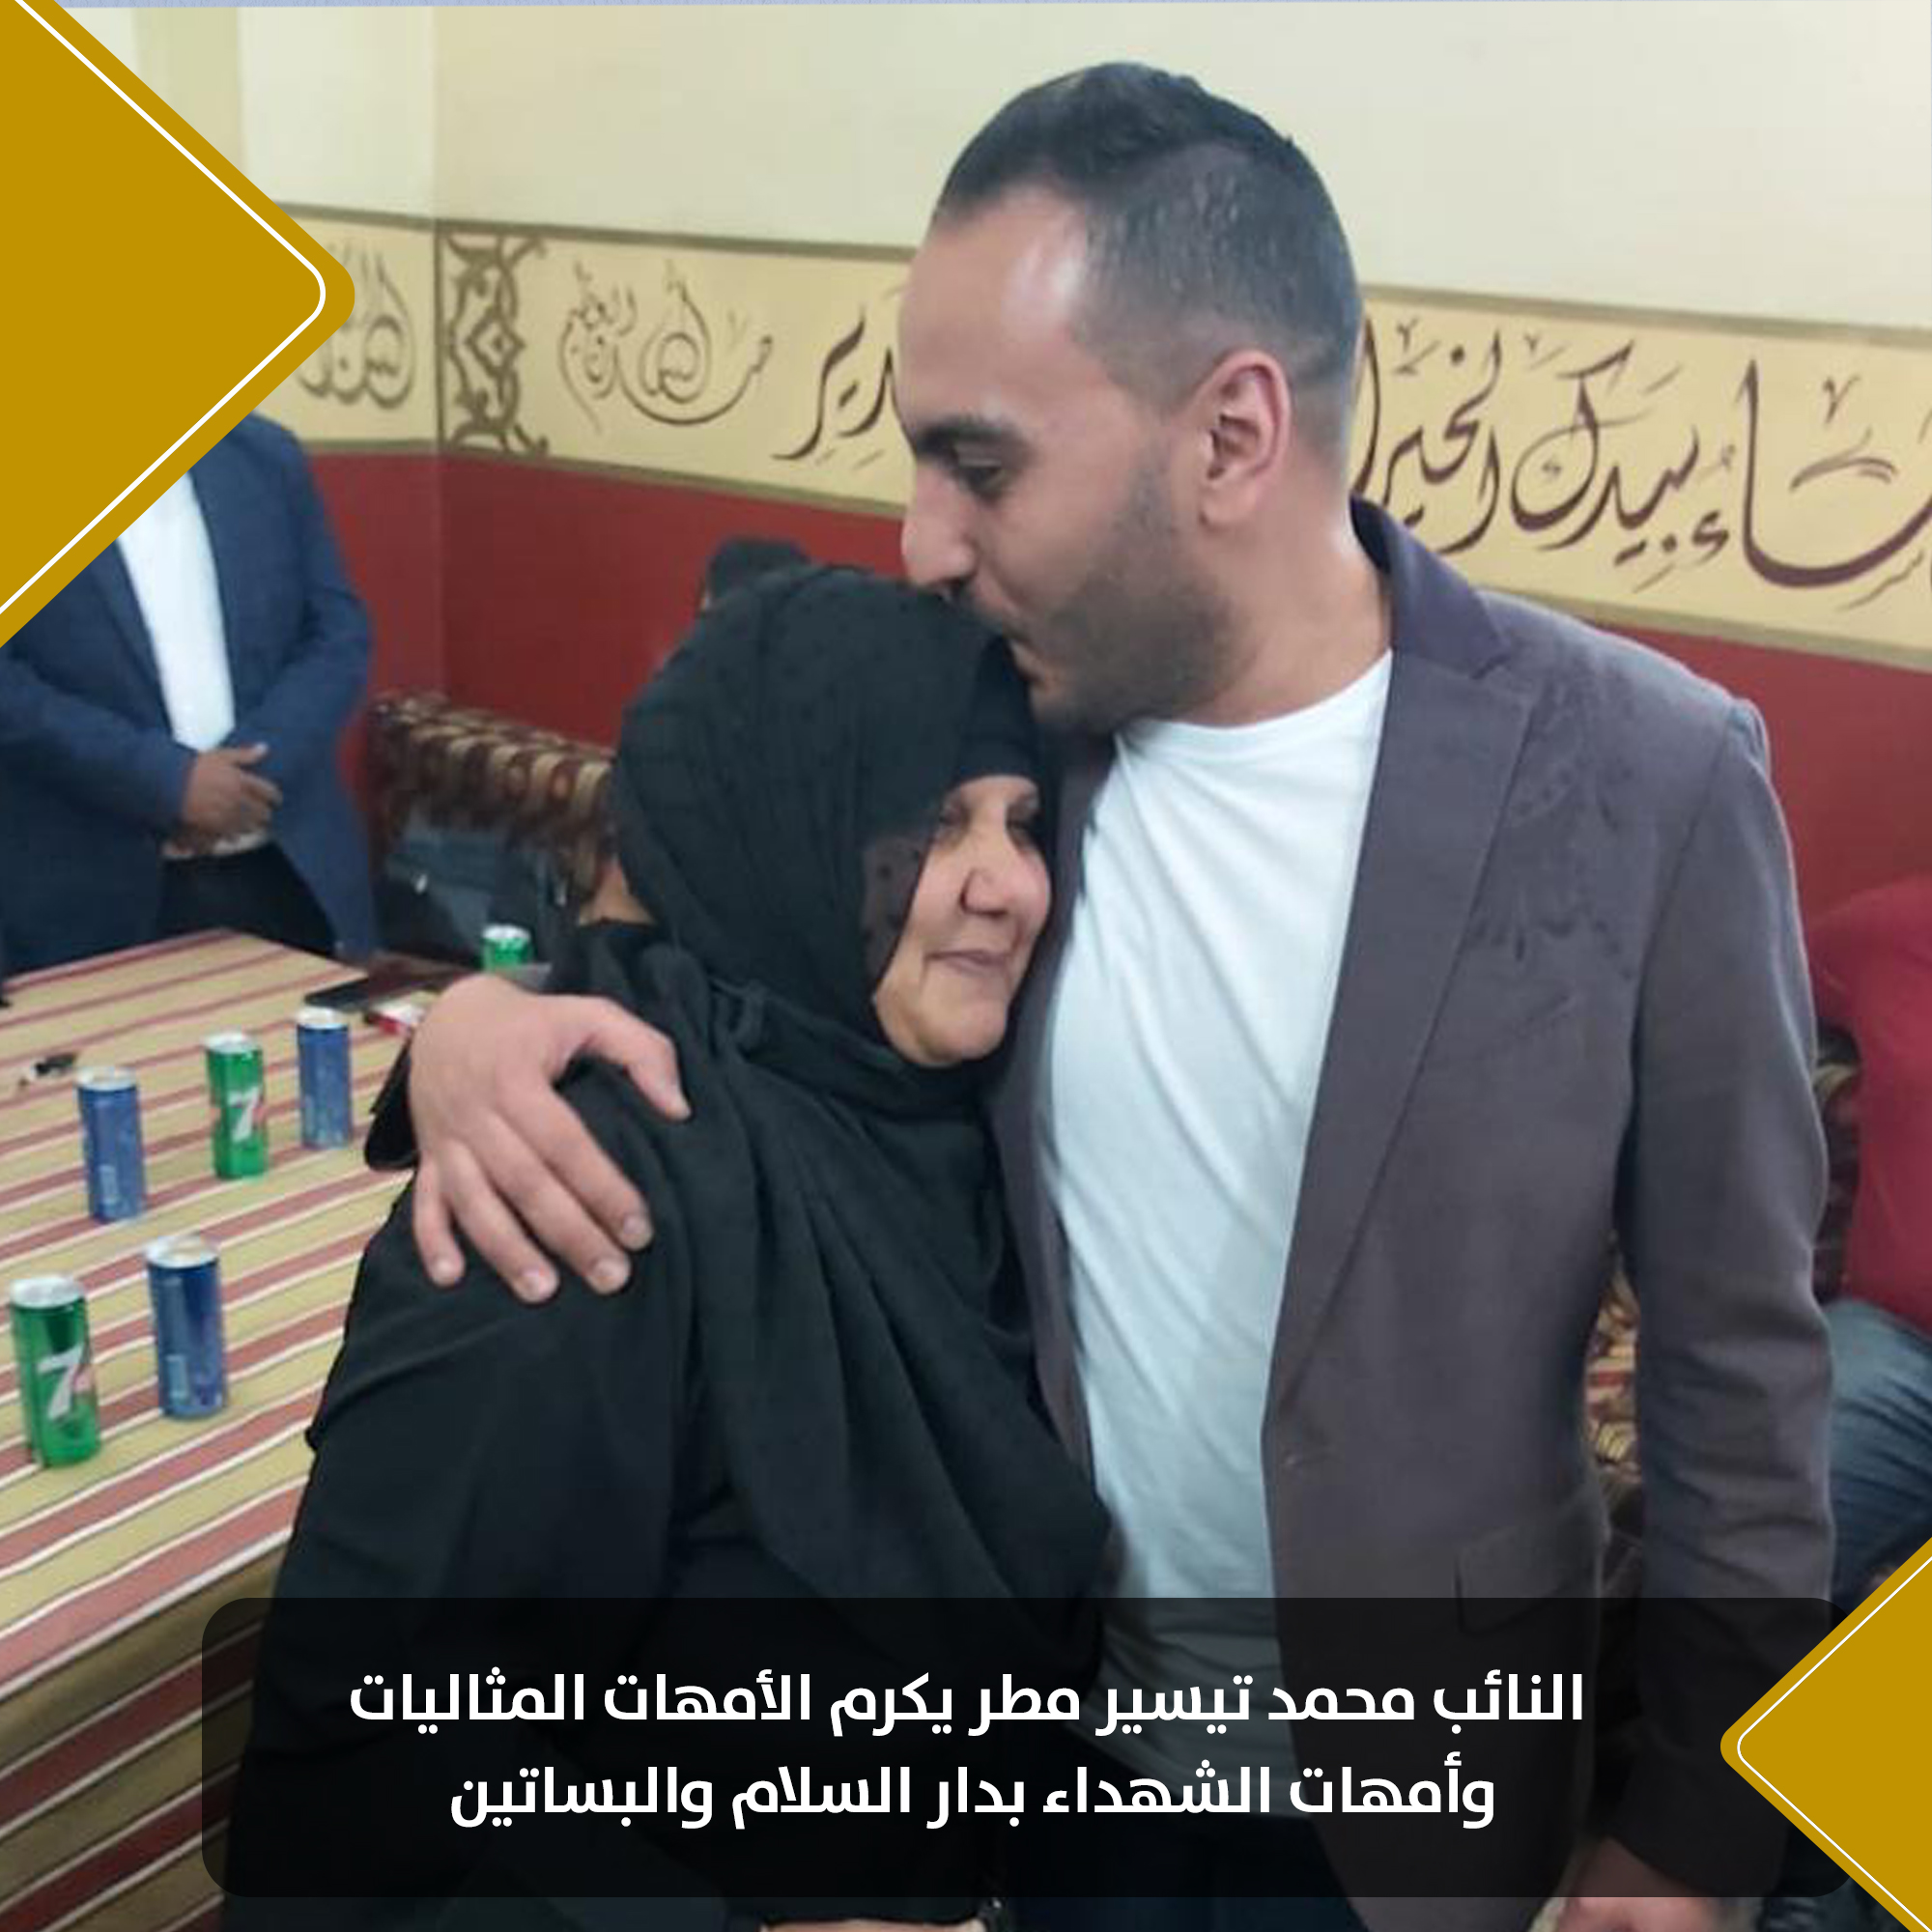 النائب محمد تيسير مطر يكرم أمهات الشهداء بمناسبة عيد الأم (6)